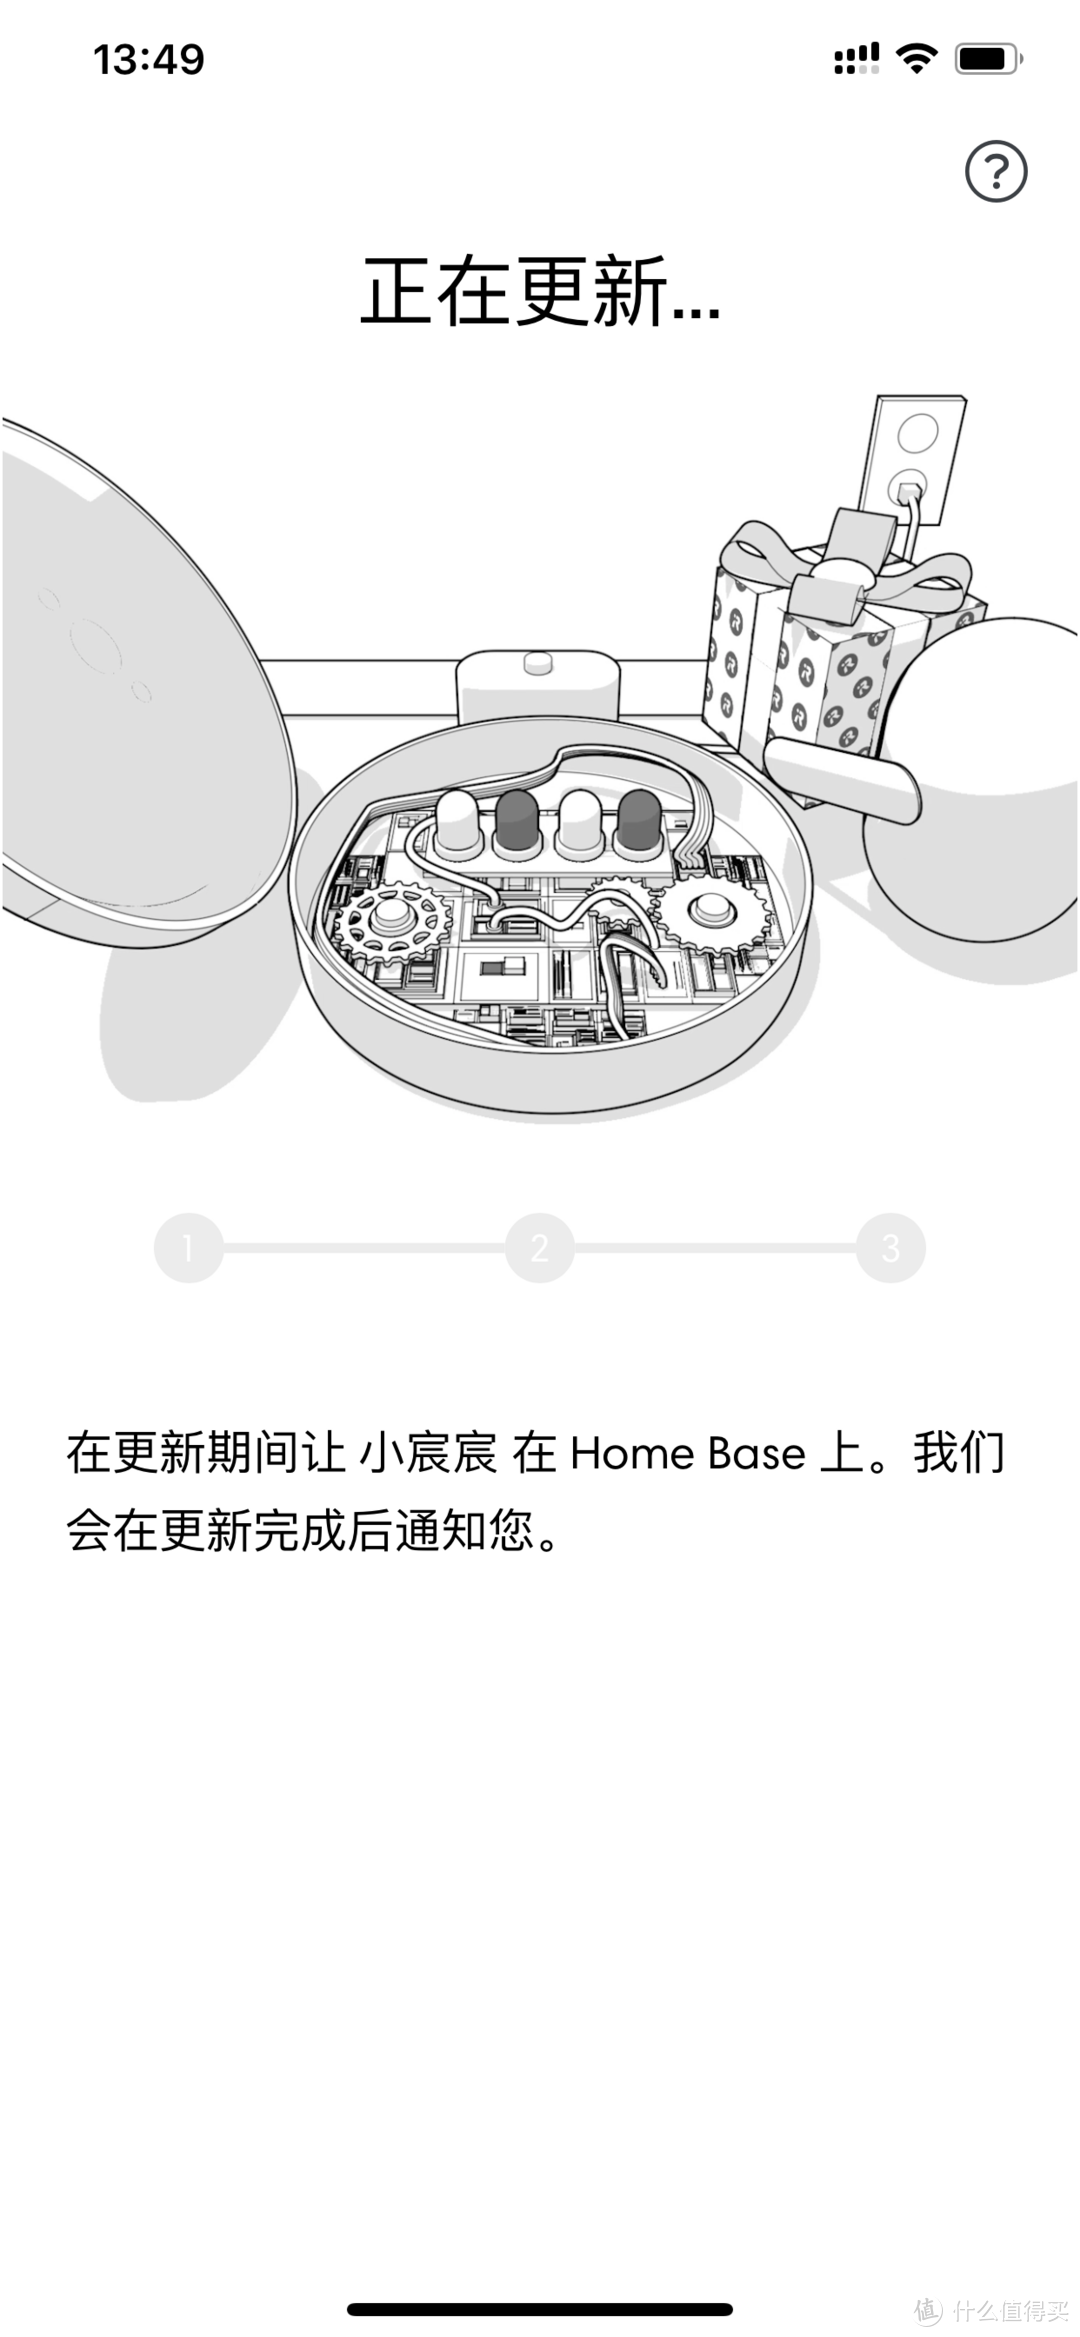 iRobot i7+Home Base 国行开箱